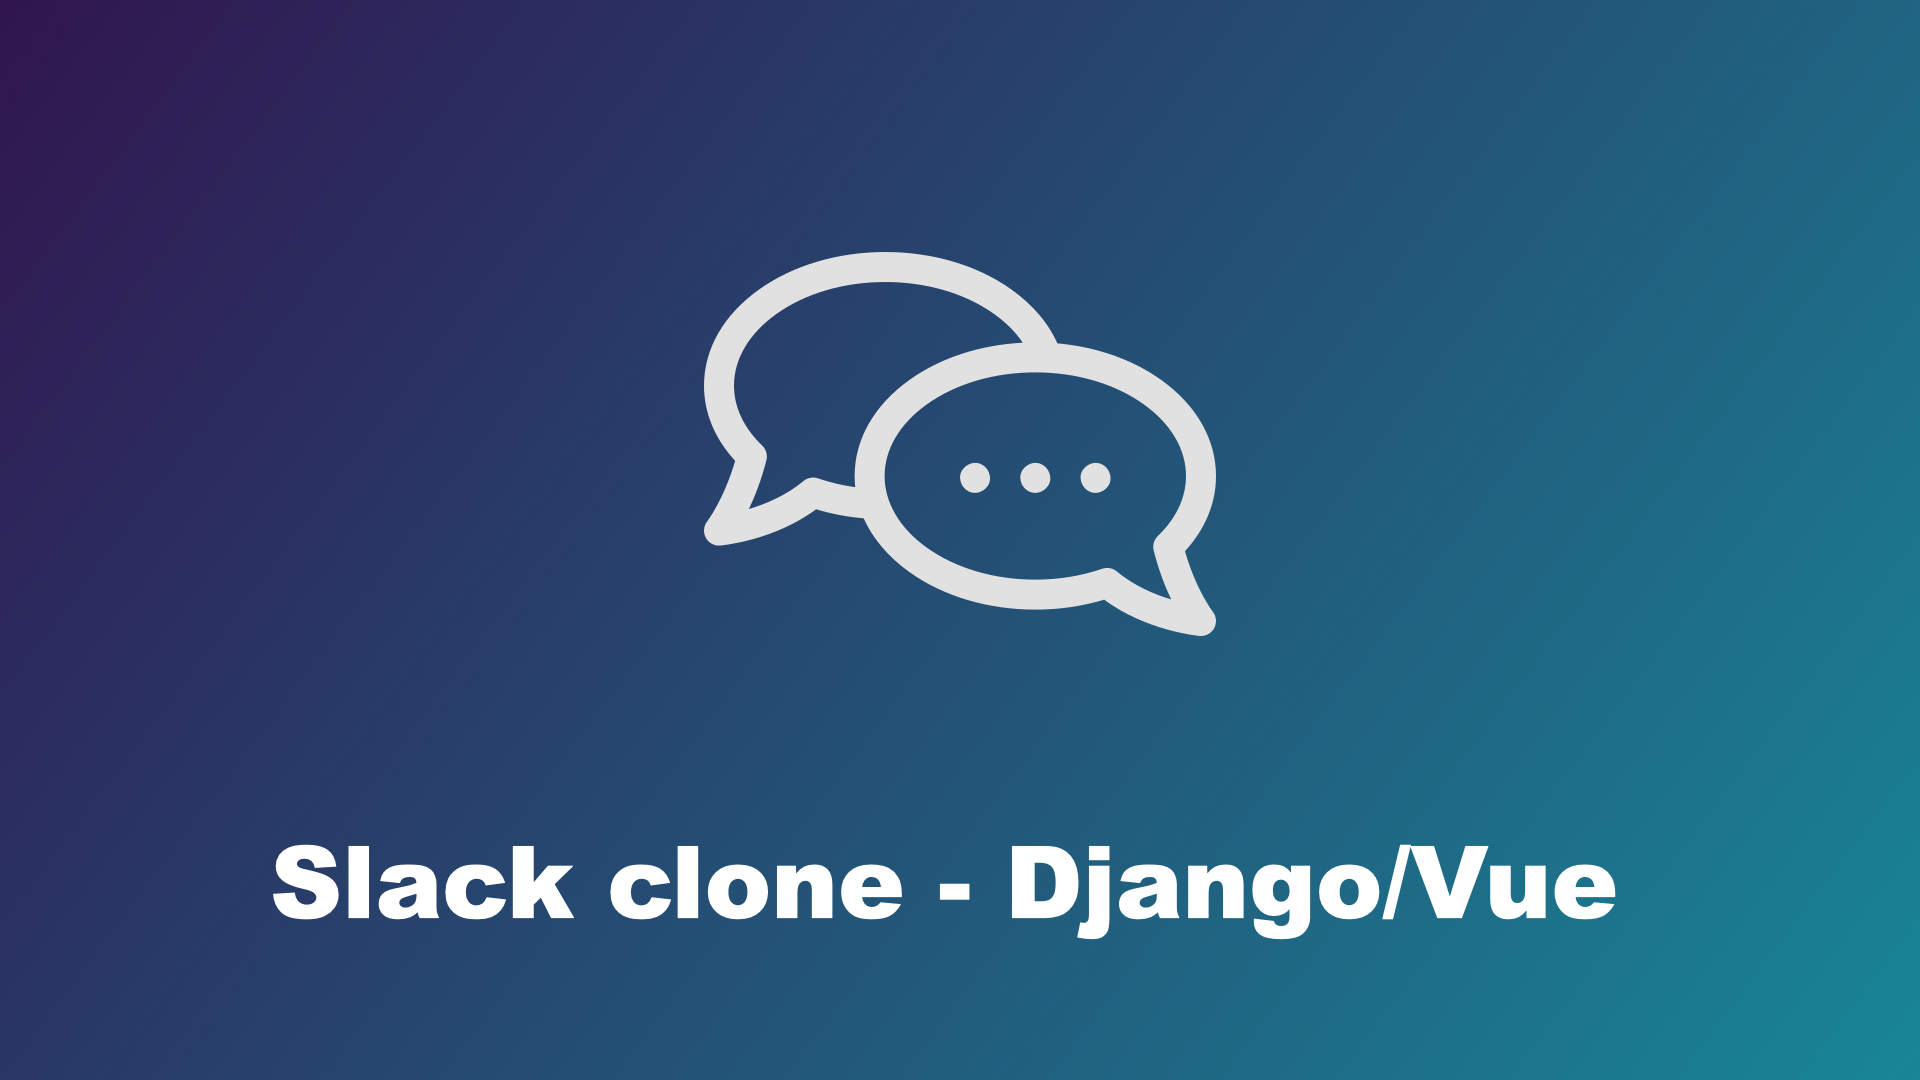 Build a Slack clone using Django and Vue